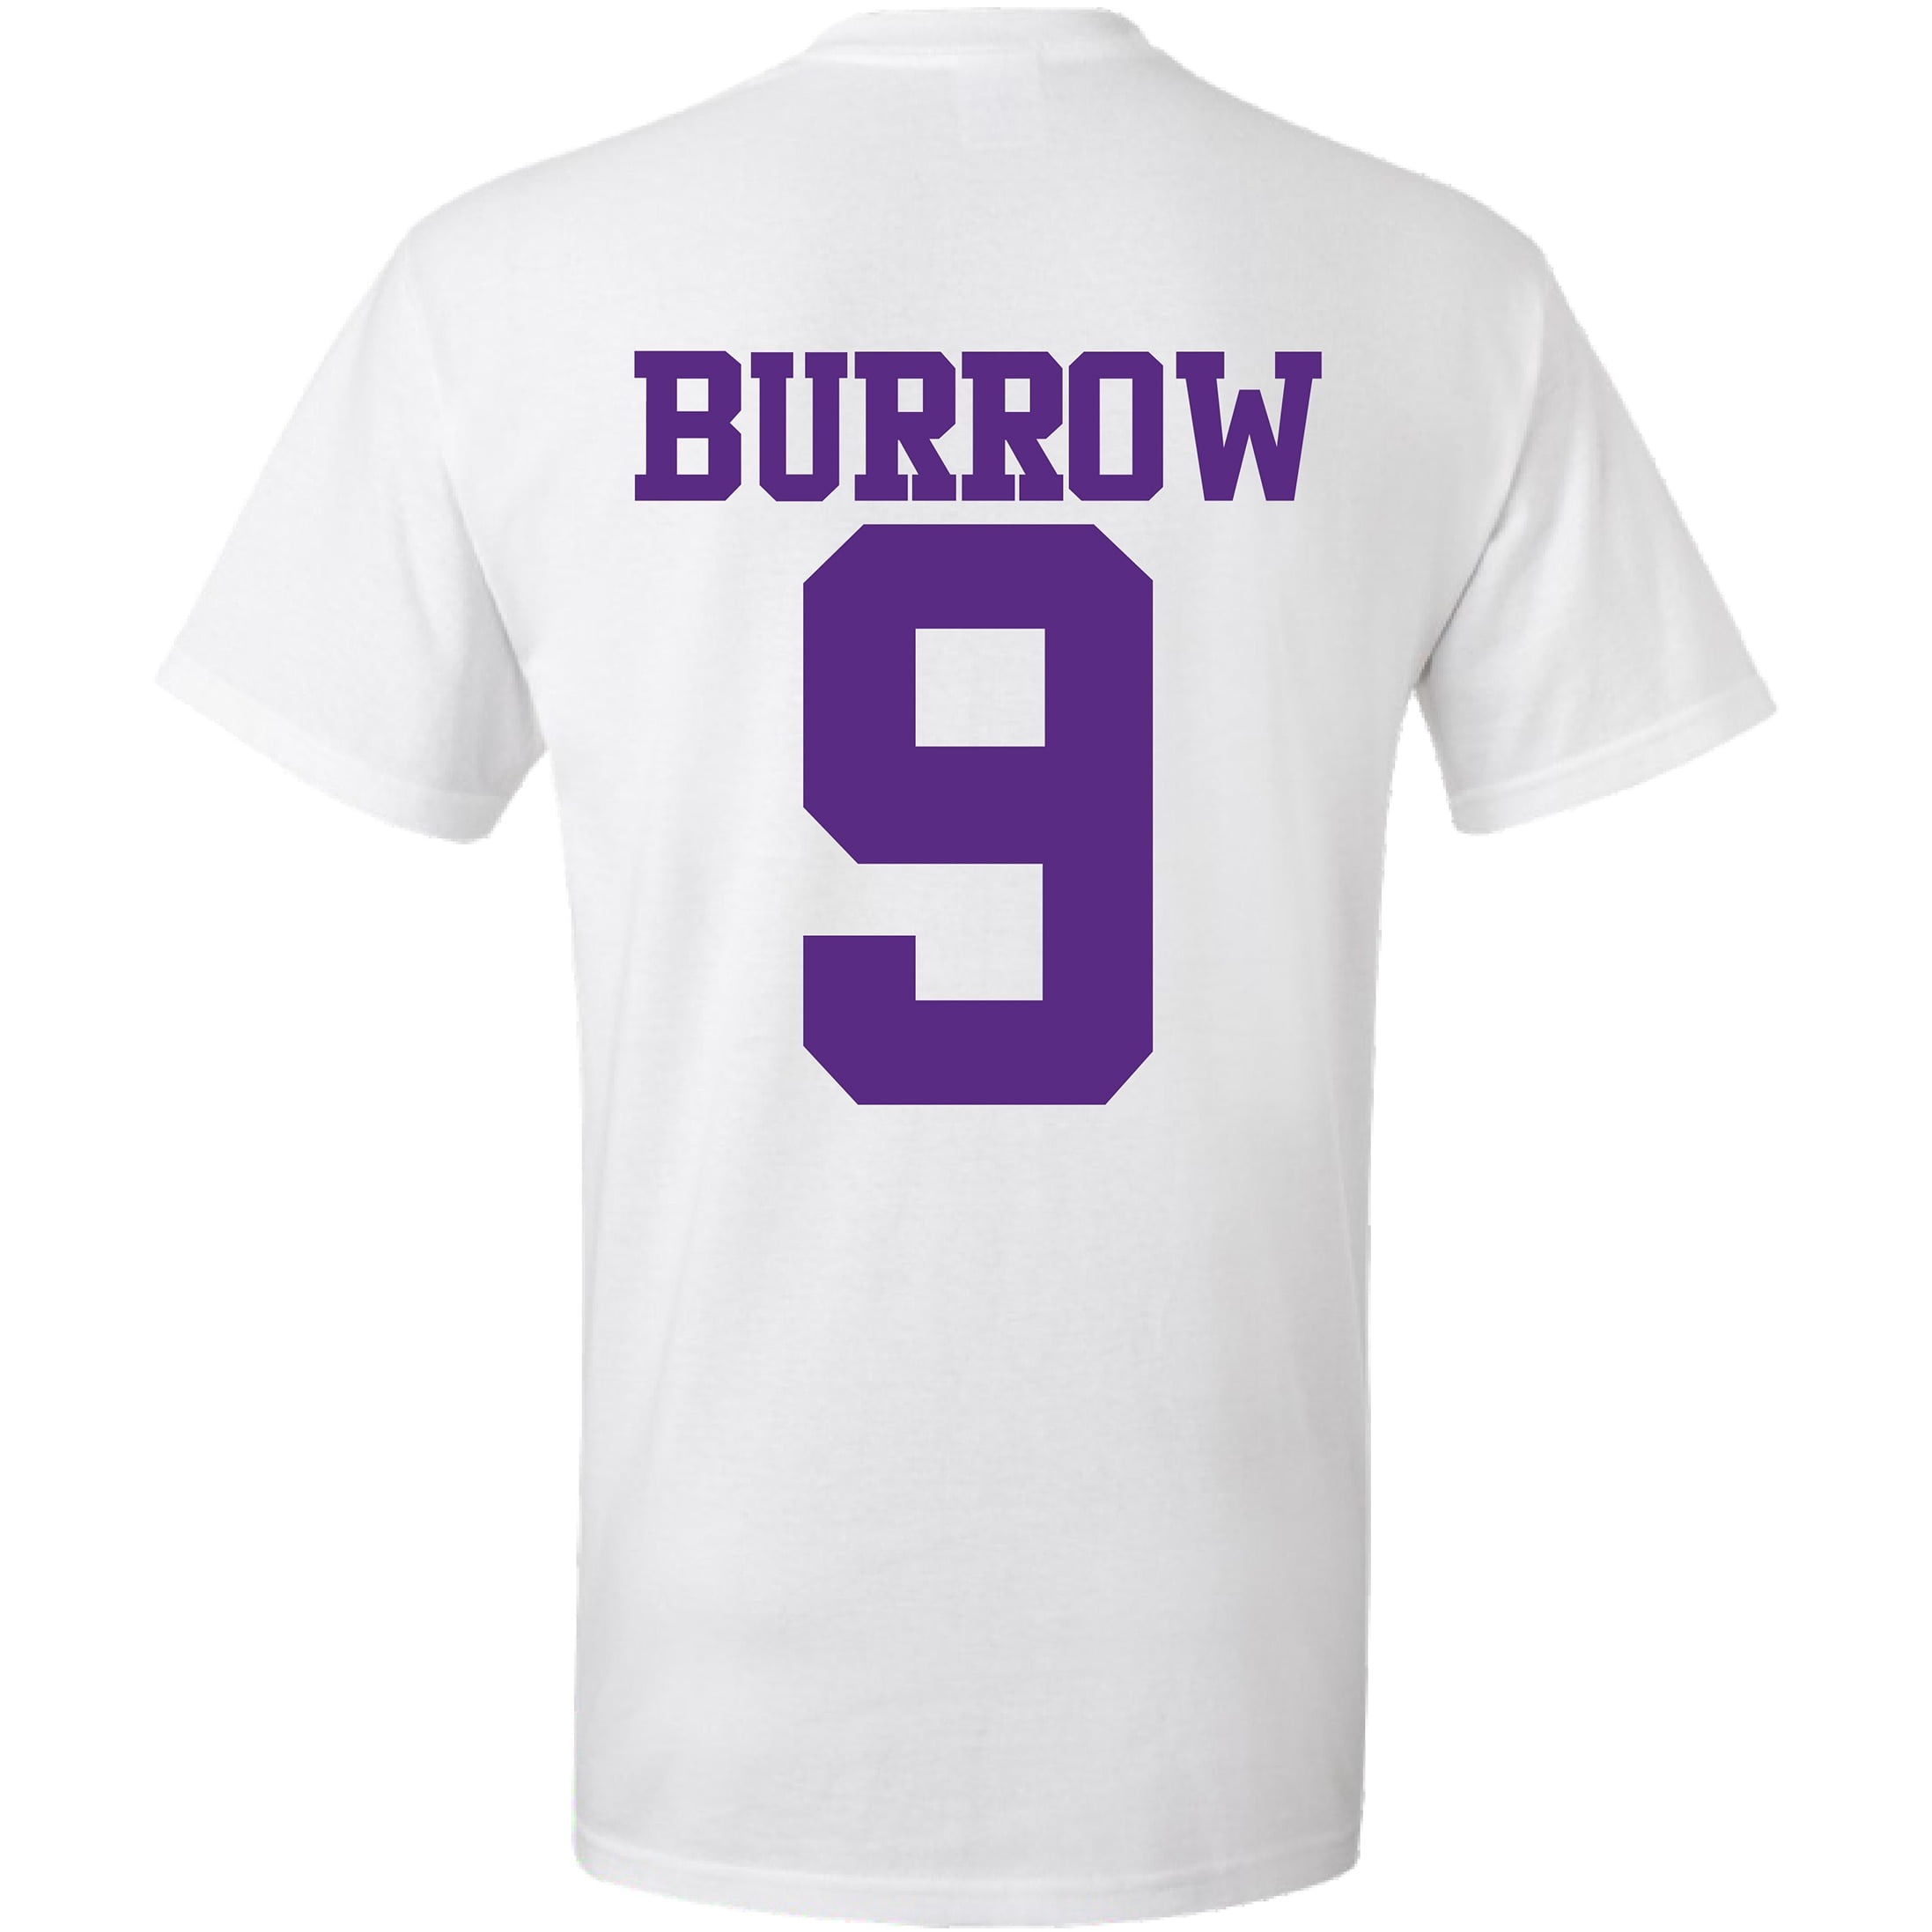 lsu burrow shirt